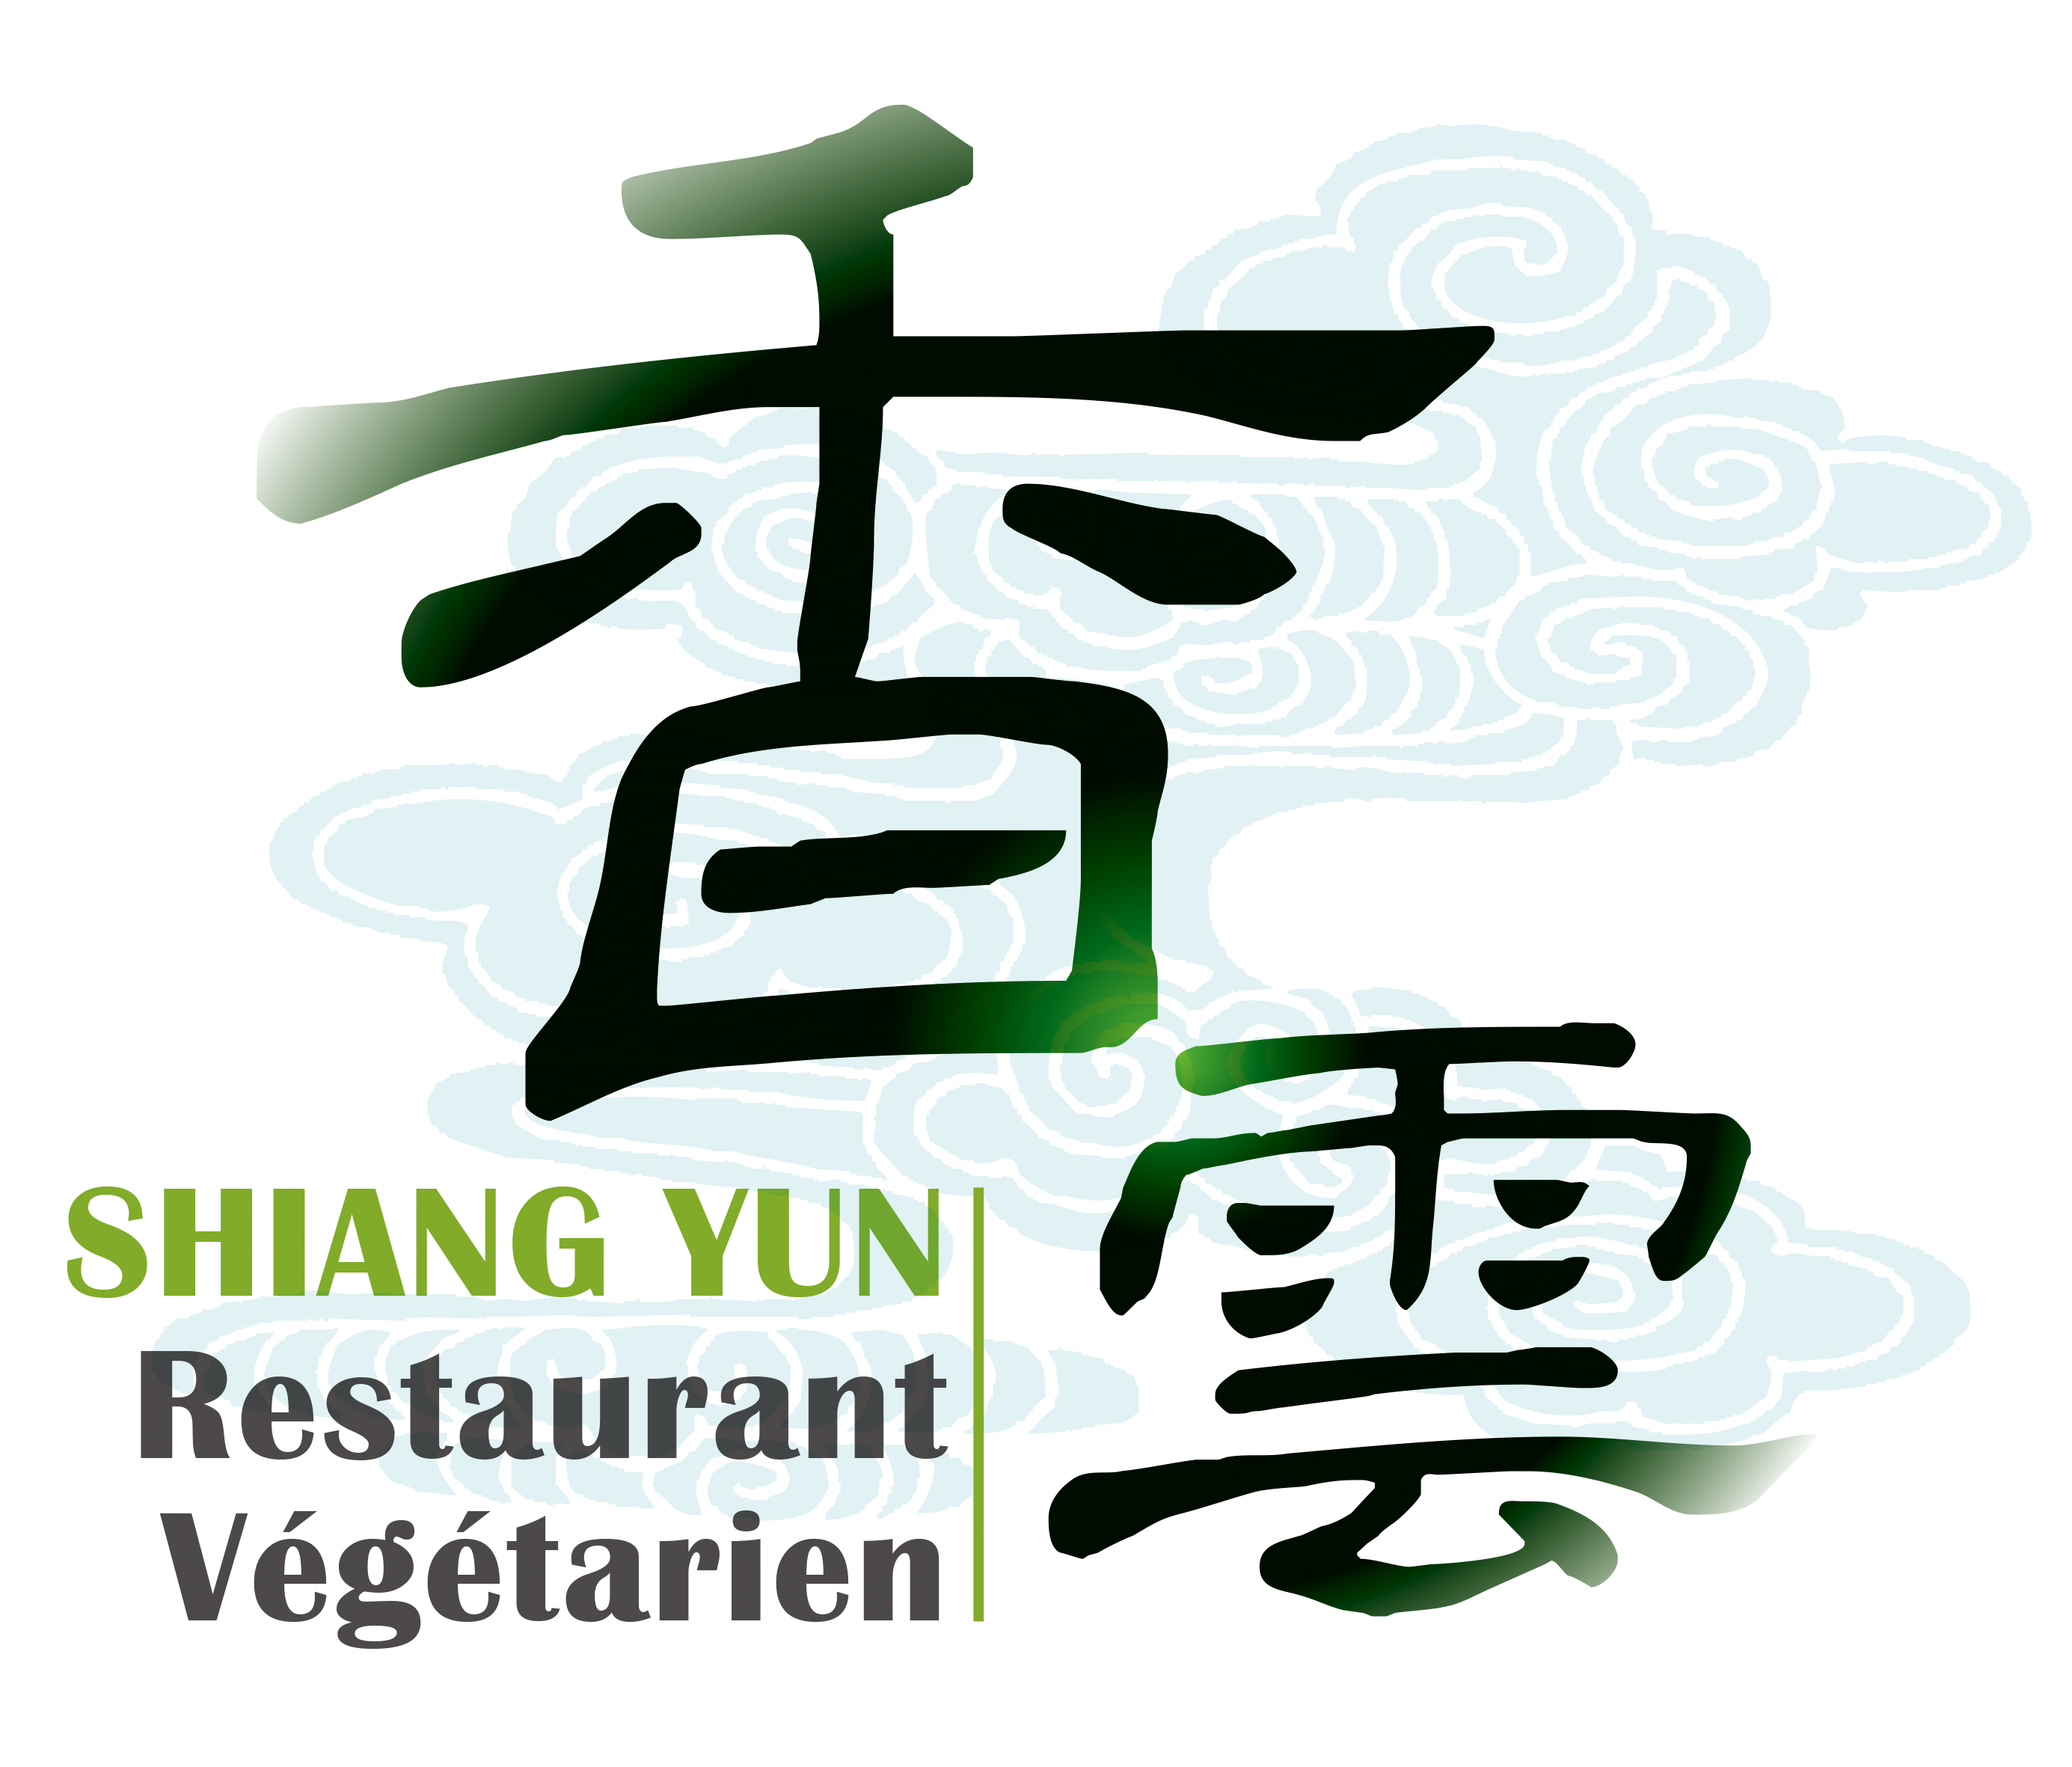 Shiang Yun Restaurant Végétarien